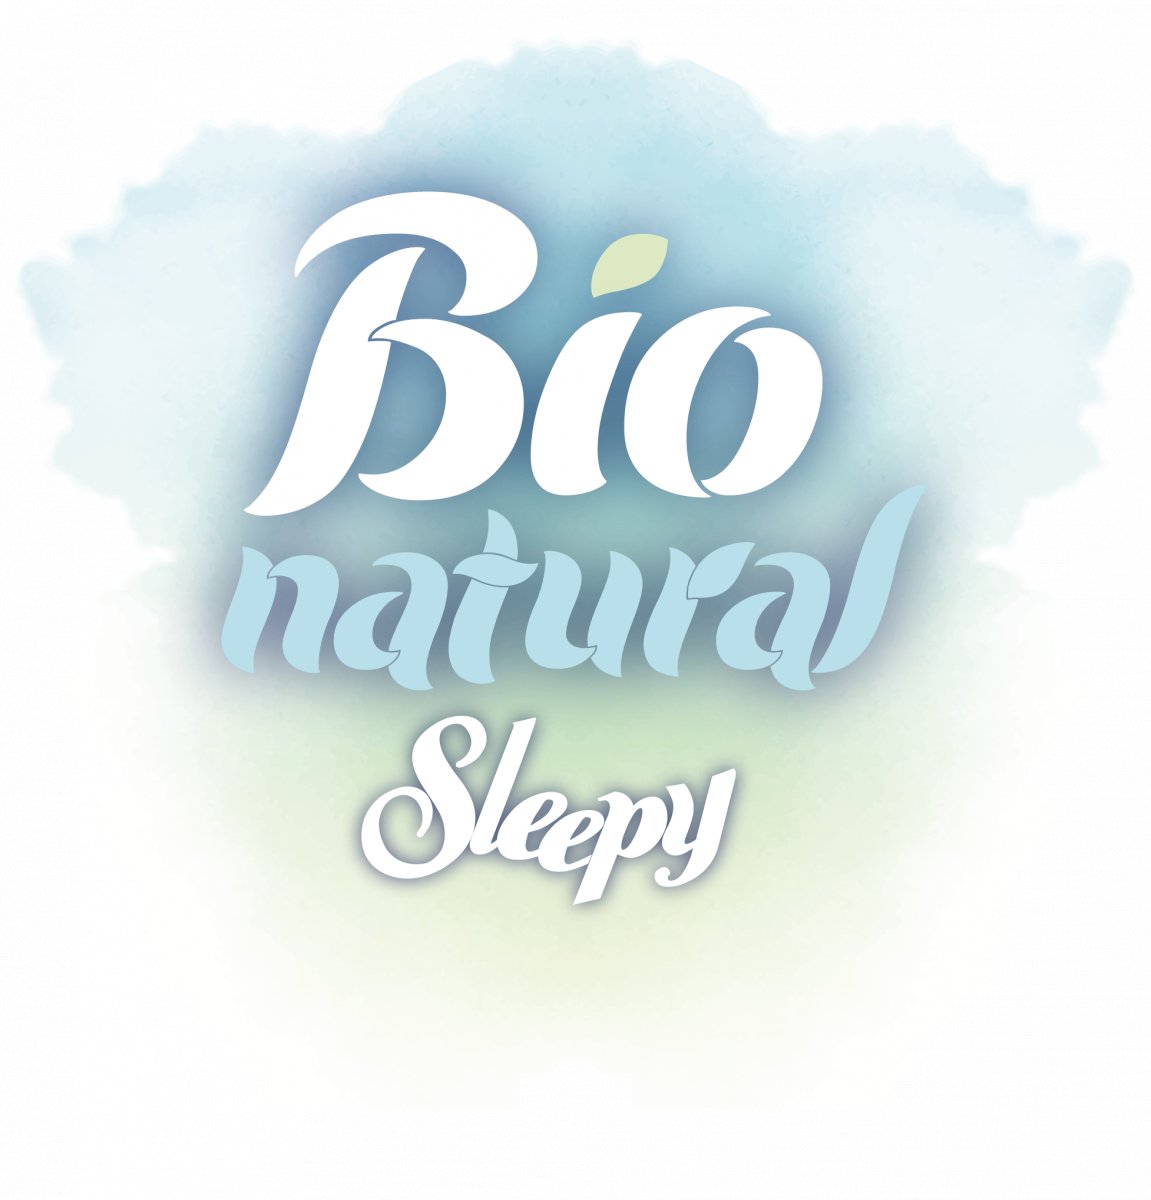 Bio natural. Sleepy Bio natural. Sleepy Bio 3. Logo Sleepy Bio natural. Sleepy Bio Midi 3 28 6.